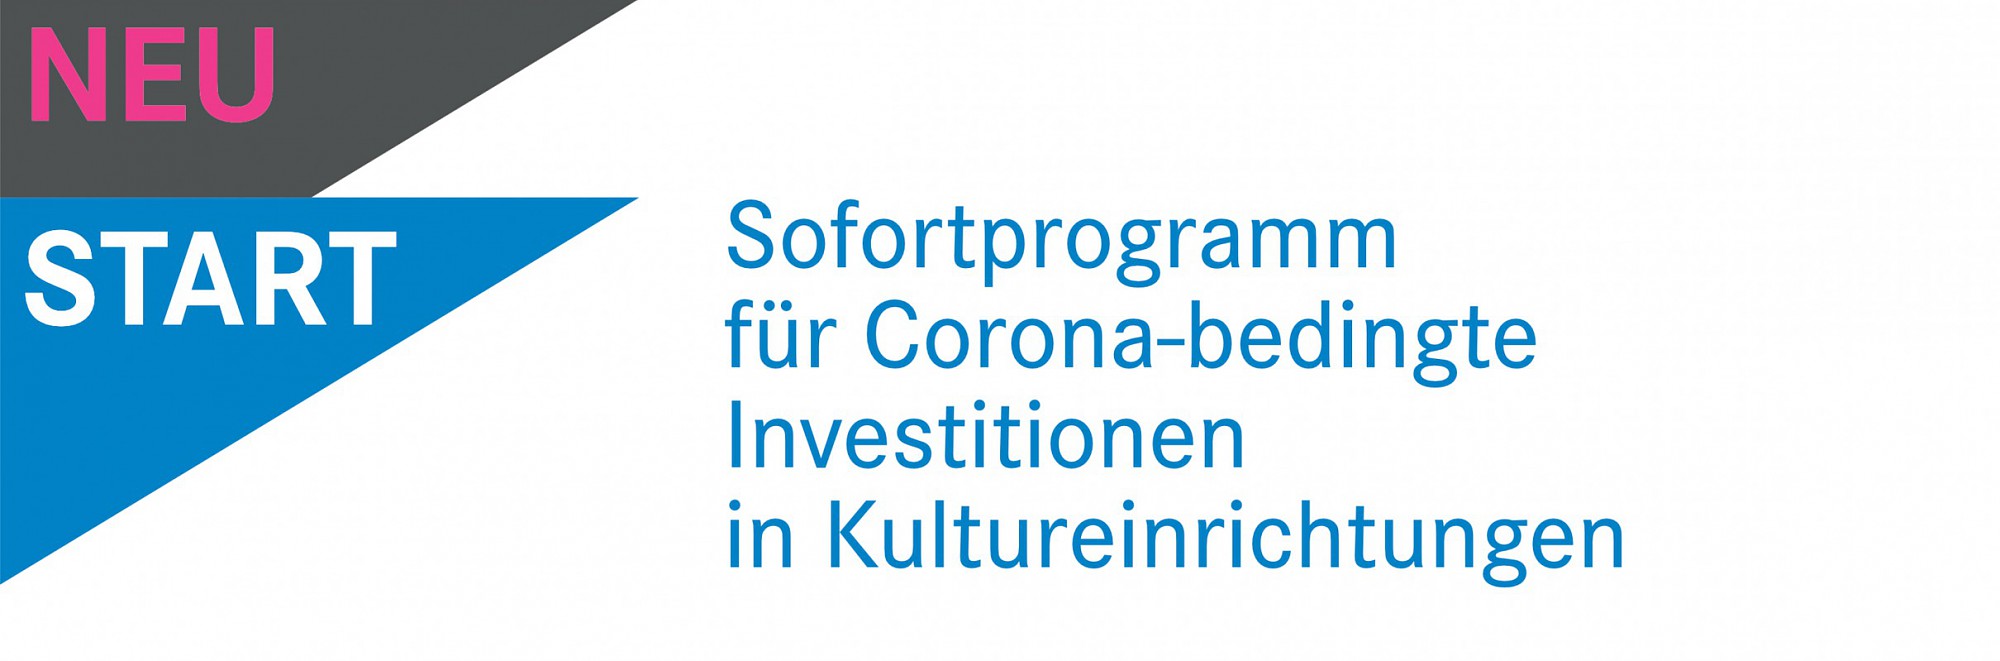 Sofortprogramm für Corona-bedingte Investionen 2